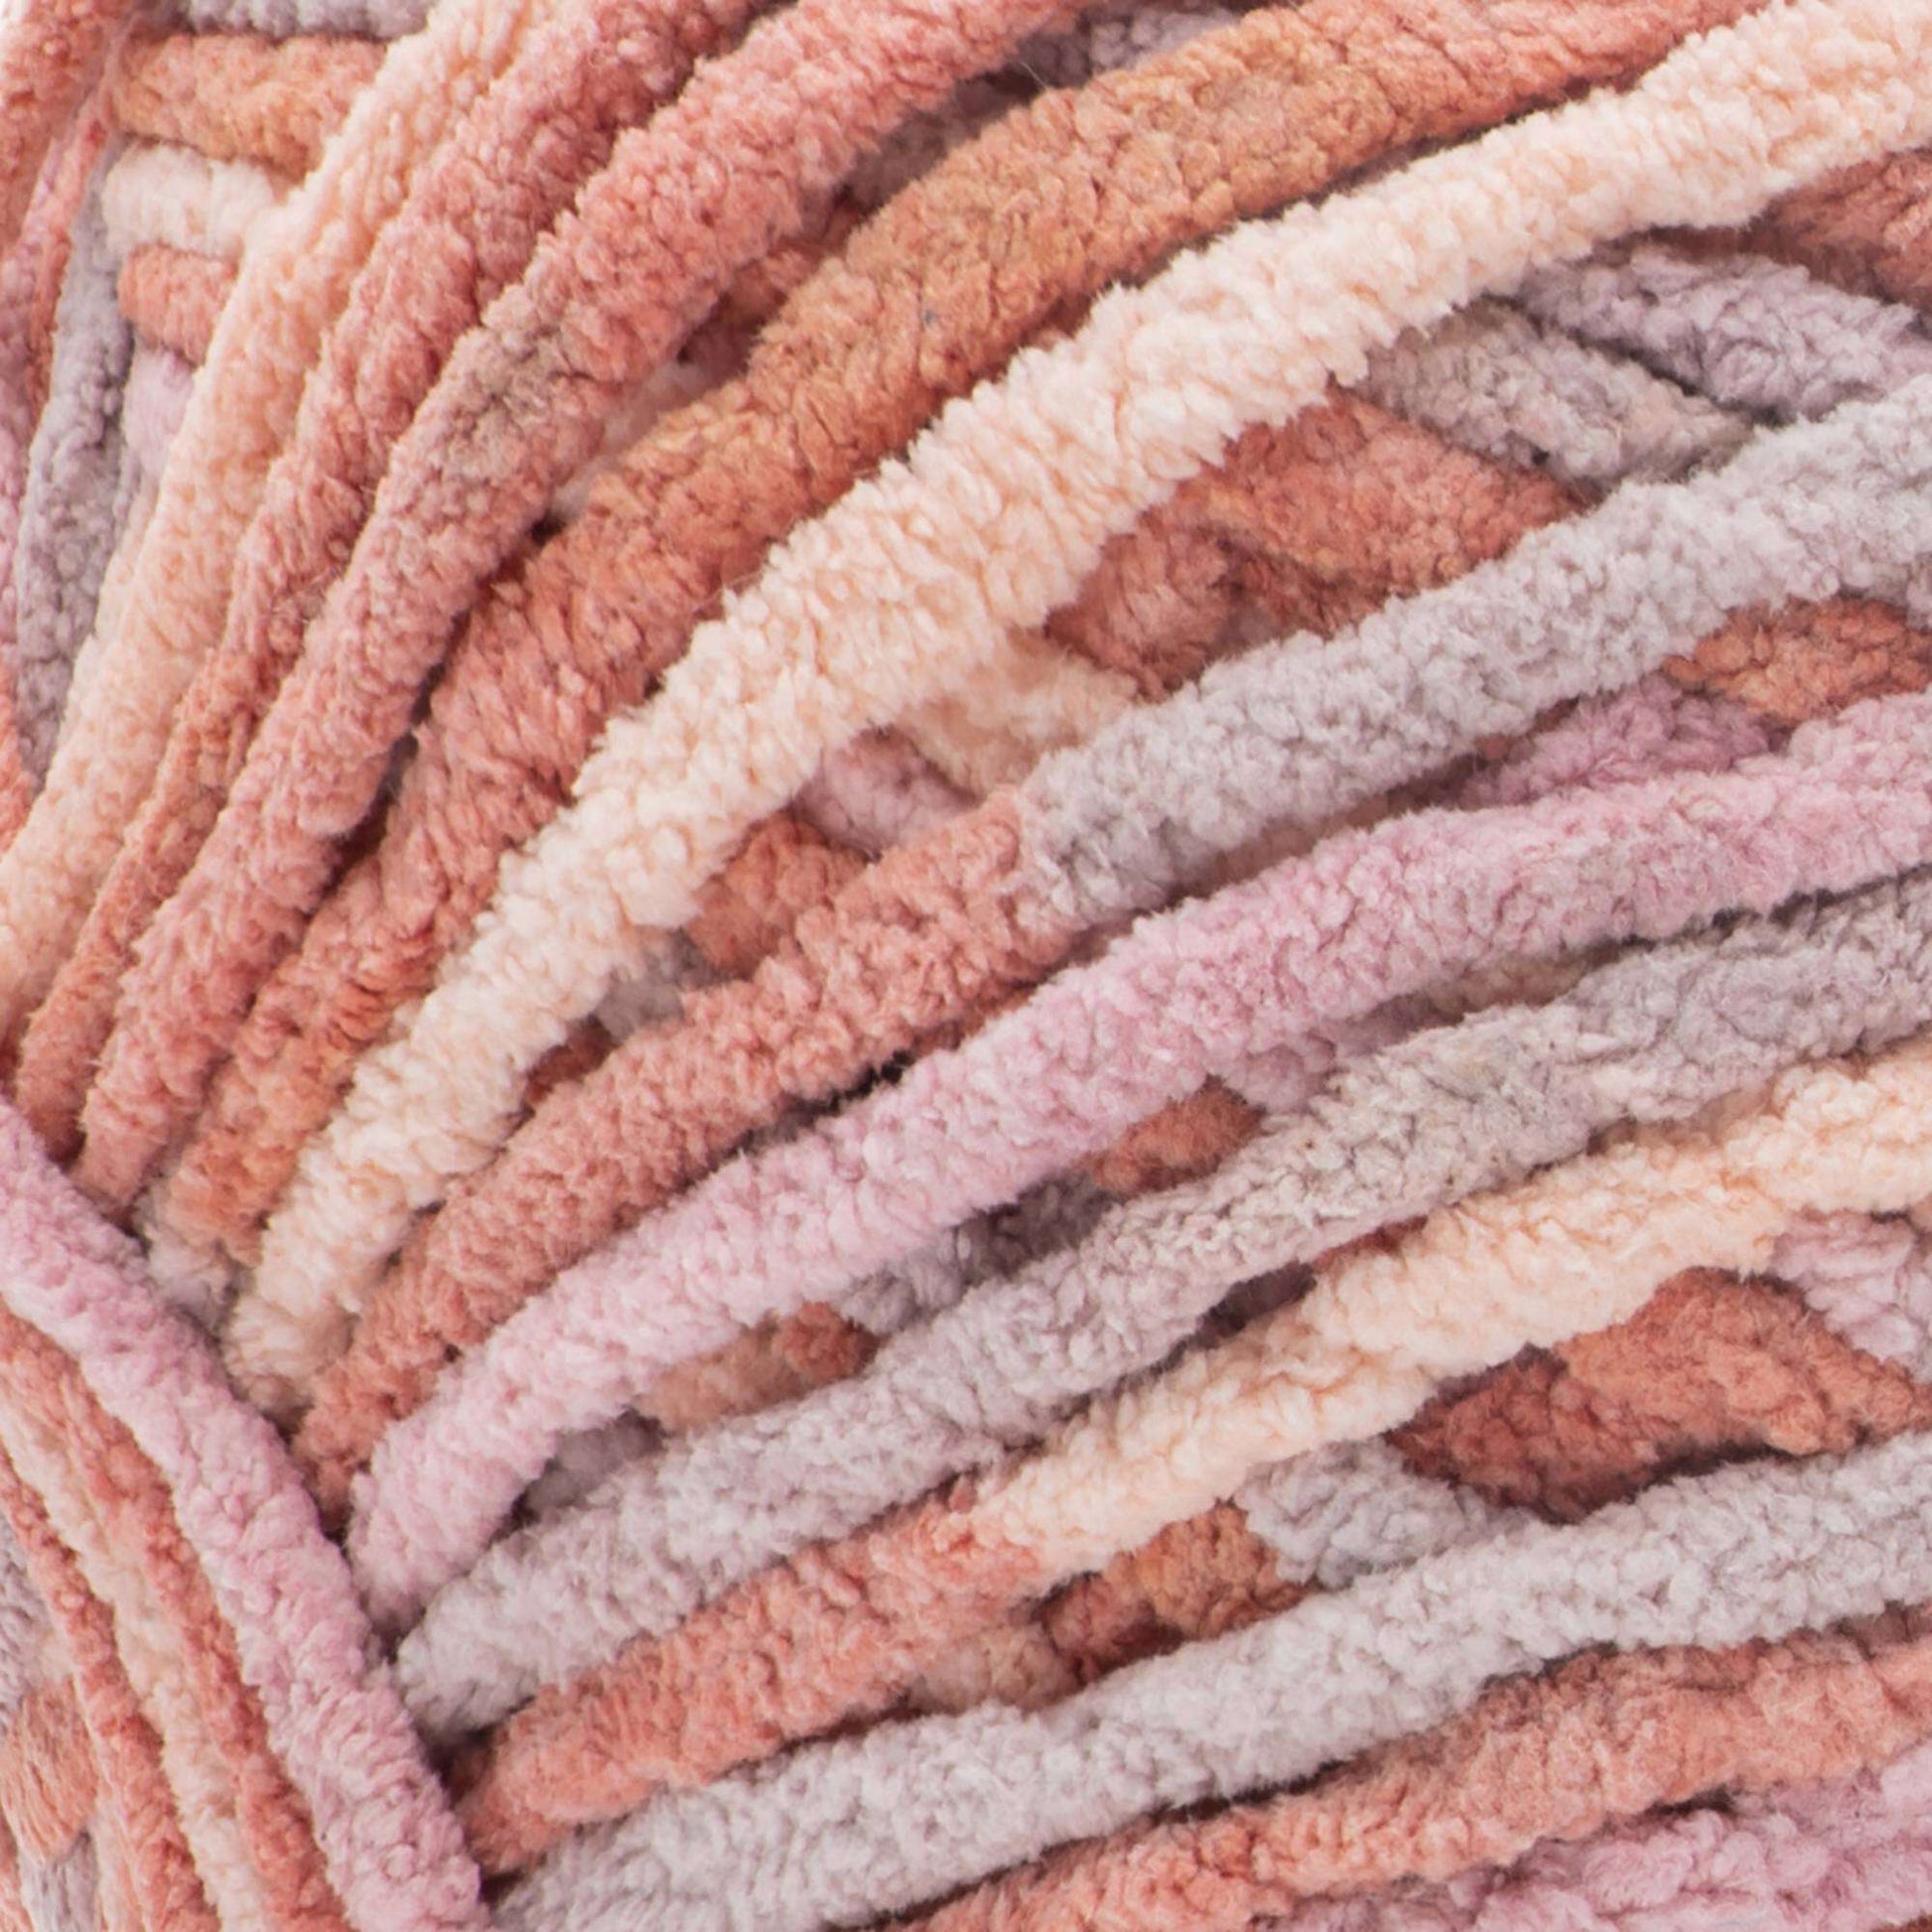 Bernat Blanket Yarn-Oceanside, 1 count - Foods Co.